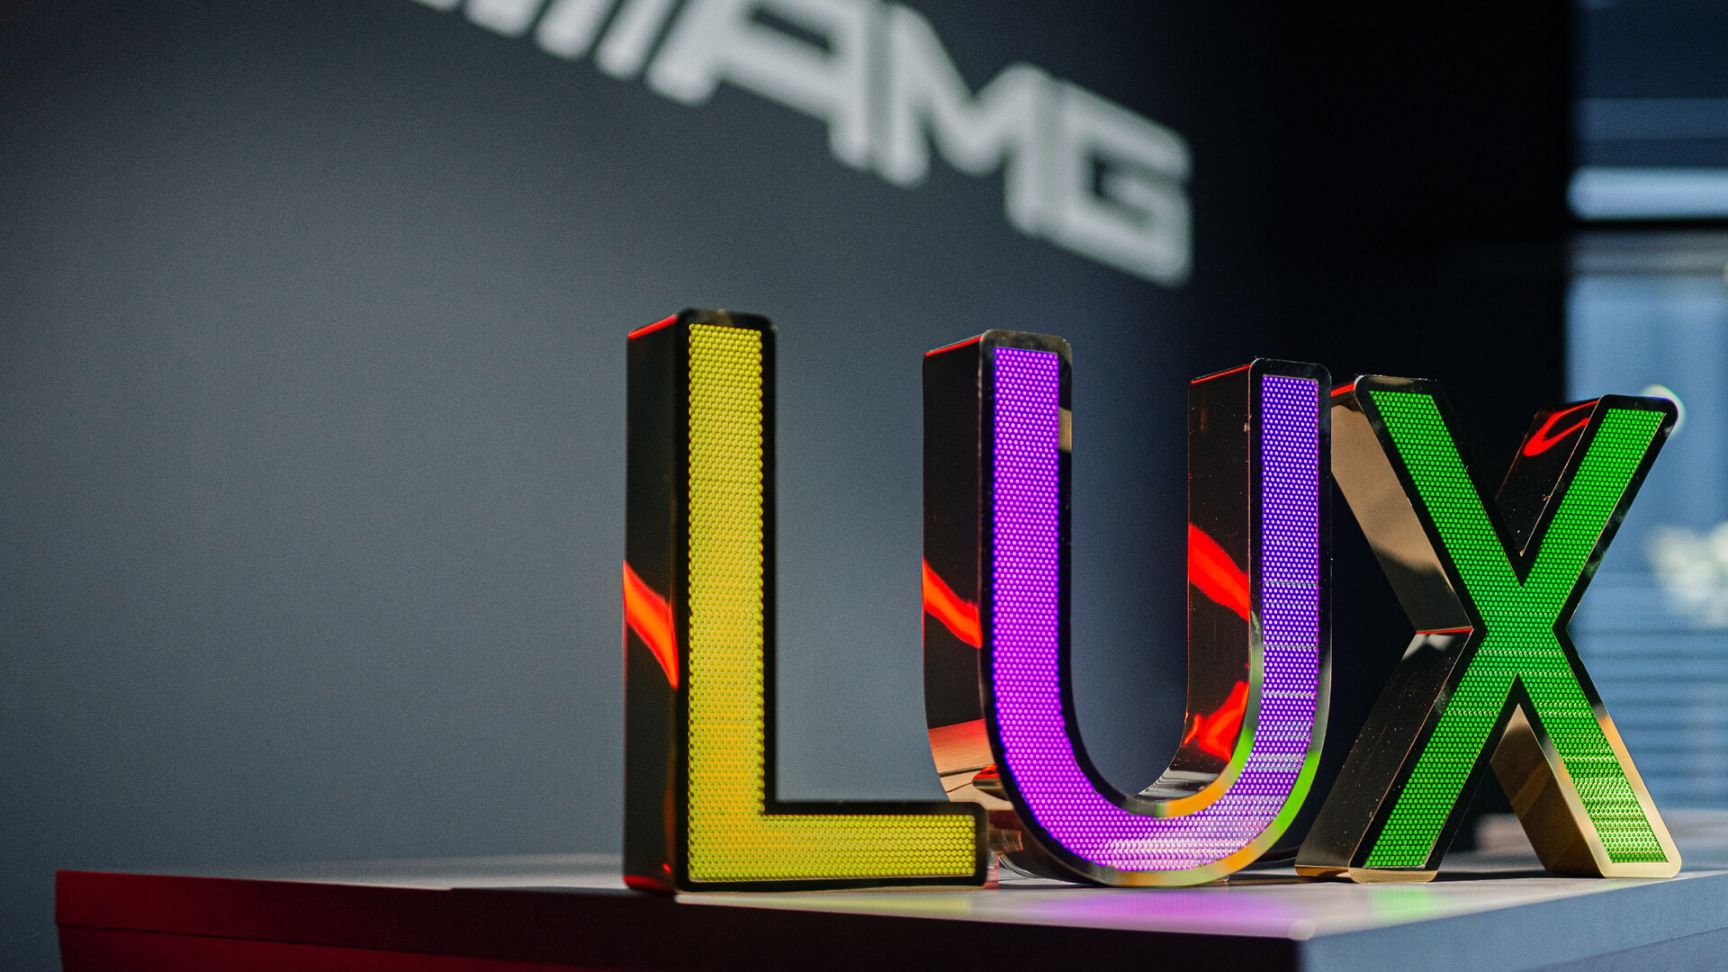 Lettres en acier inoxydable perforé LUX - Lettrage LUX en acier inoxydable perforé, rétro-éclairé par LED en trois couleurs dans le showroom Mercedes